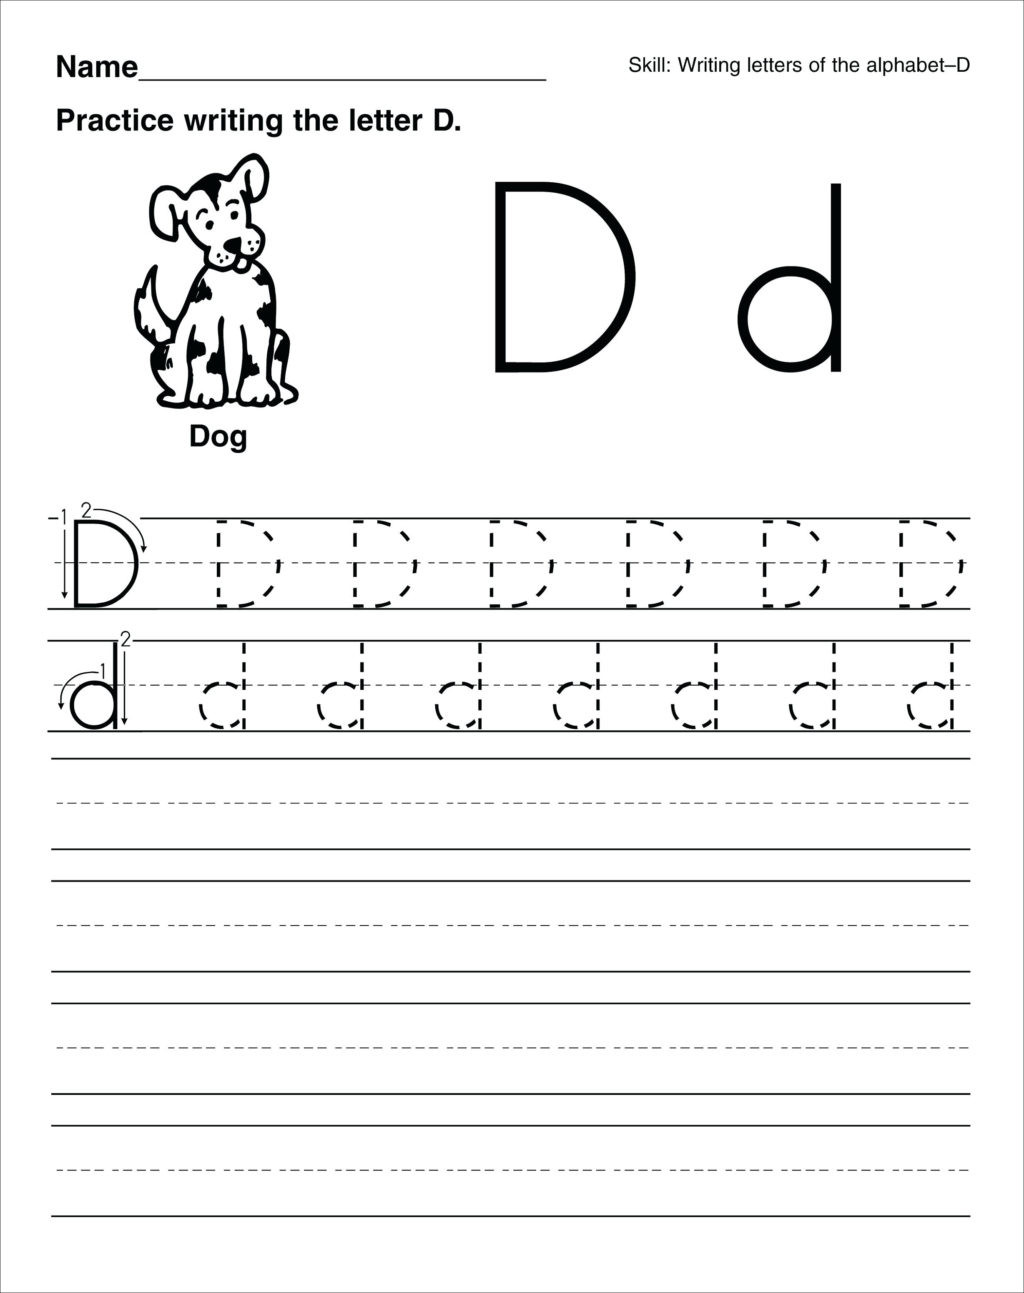 Letter D Worksheet for Preschool Worksheet astonishingorksheets for Preschool Free